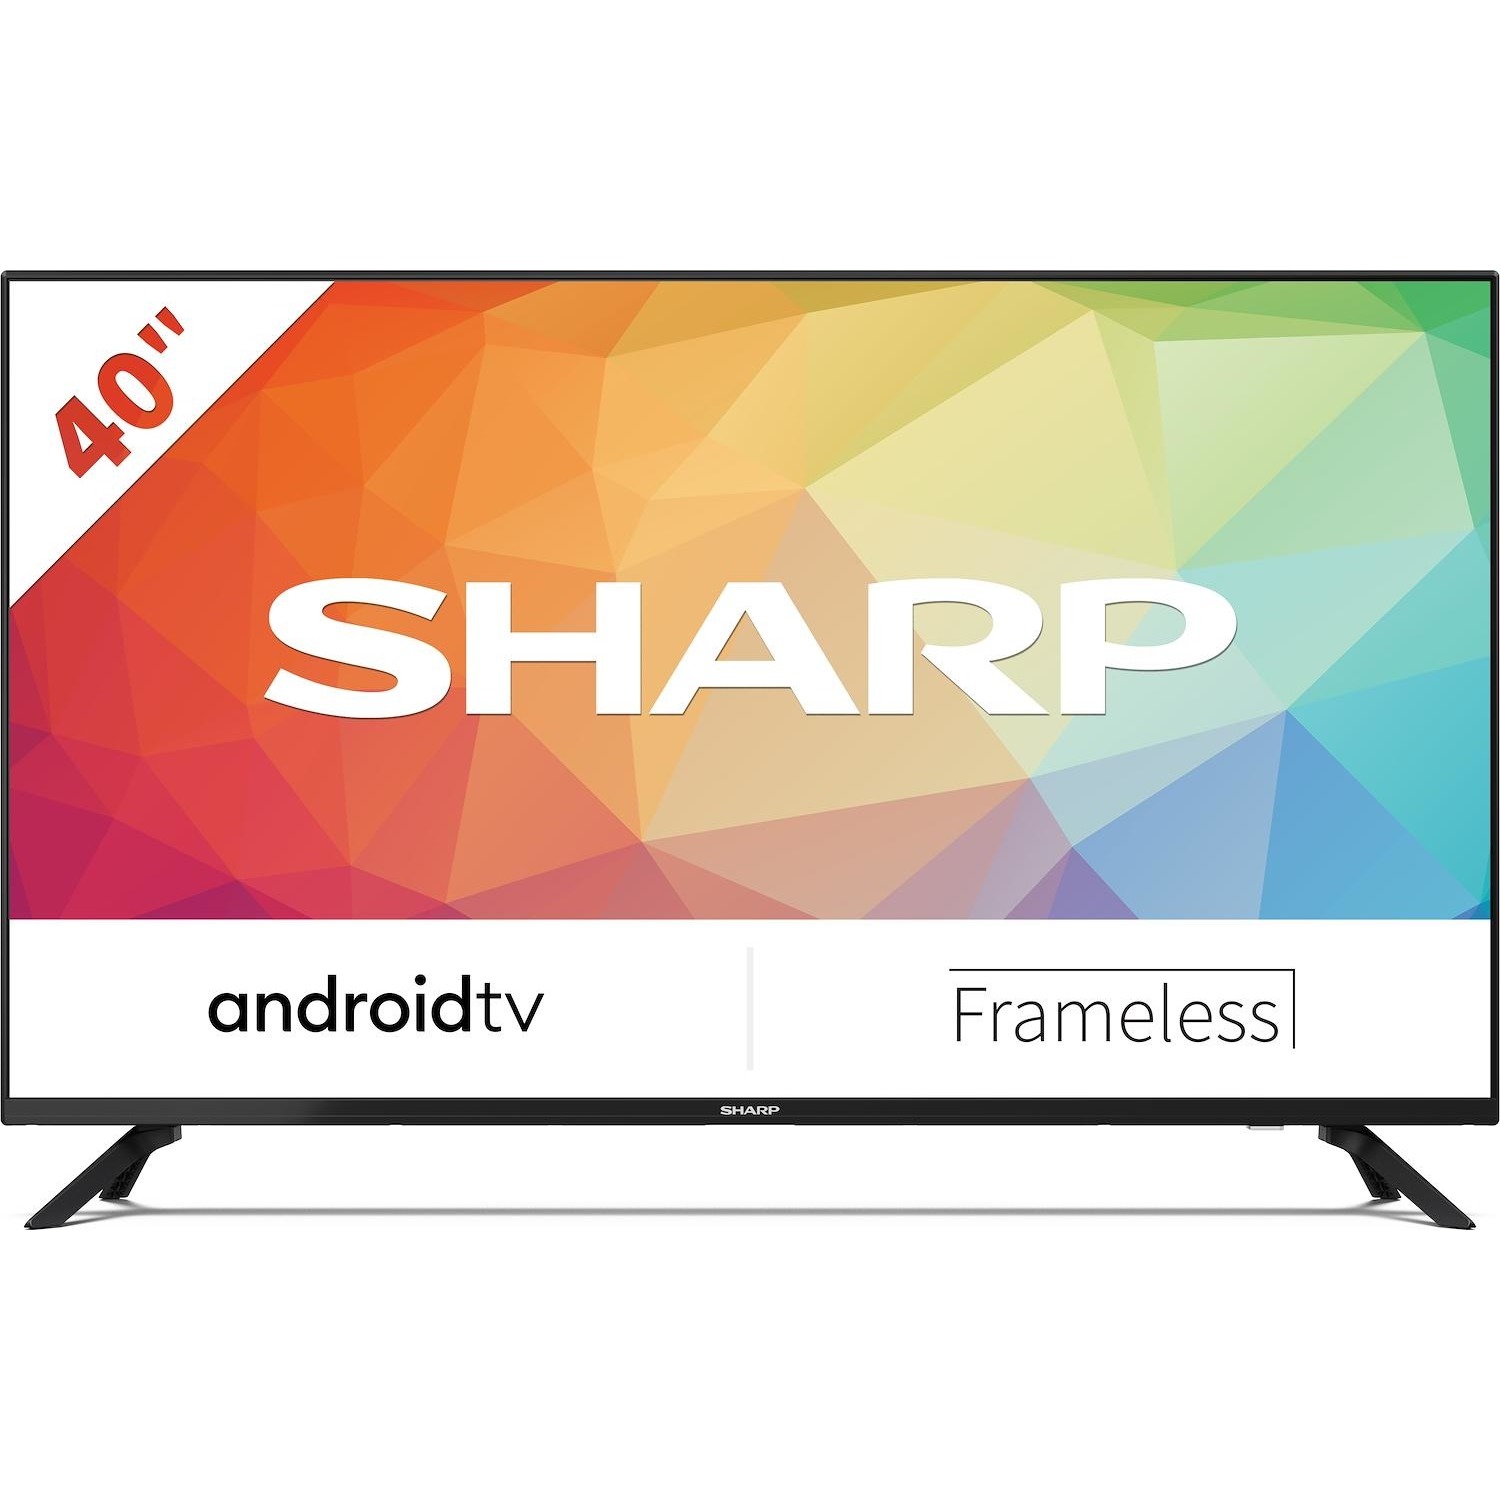 Immagine per TV LED Android Smart Sharp 40FG7EA FULL HD da DIMOStore